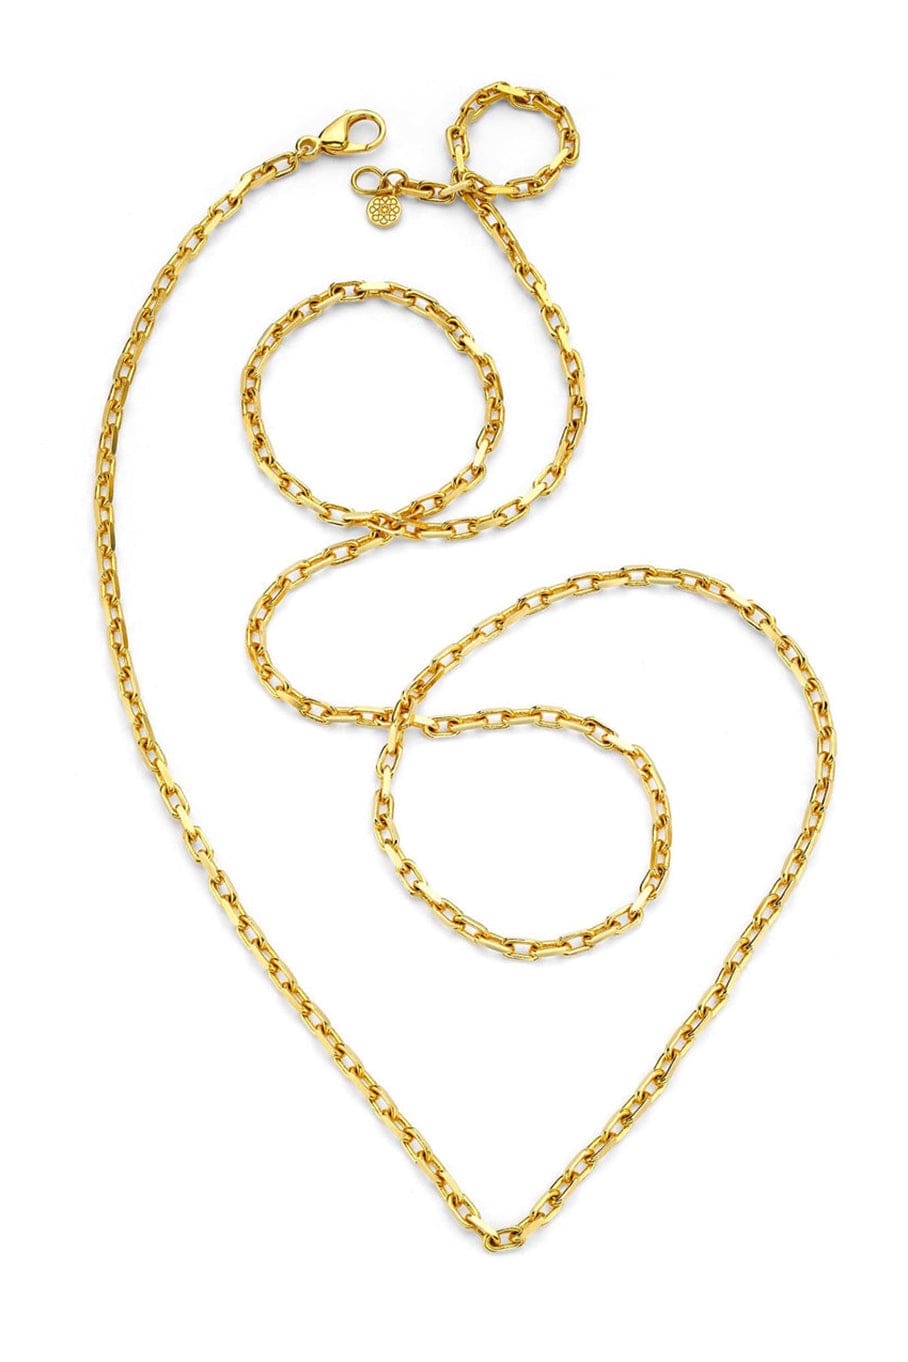 BUDDHA MAMA-18" Diamond Cut Cable Chain-YELLOW GOLD